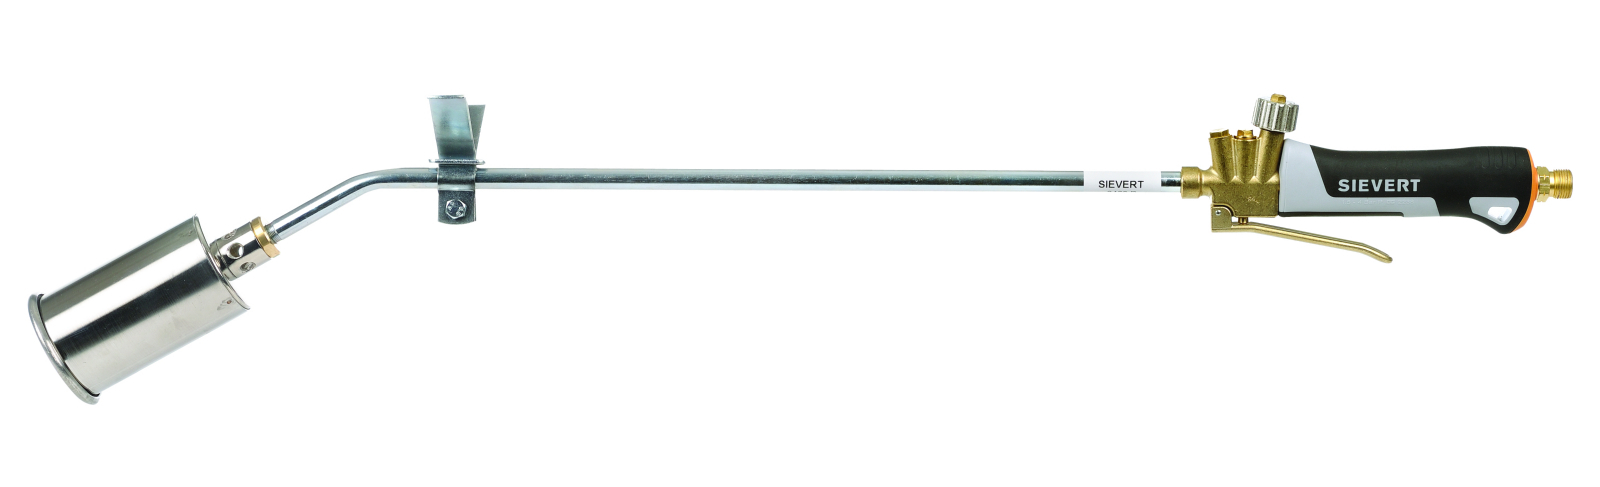 Handaufschweissbrenner - 94 cm